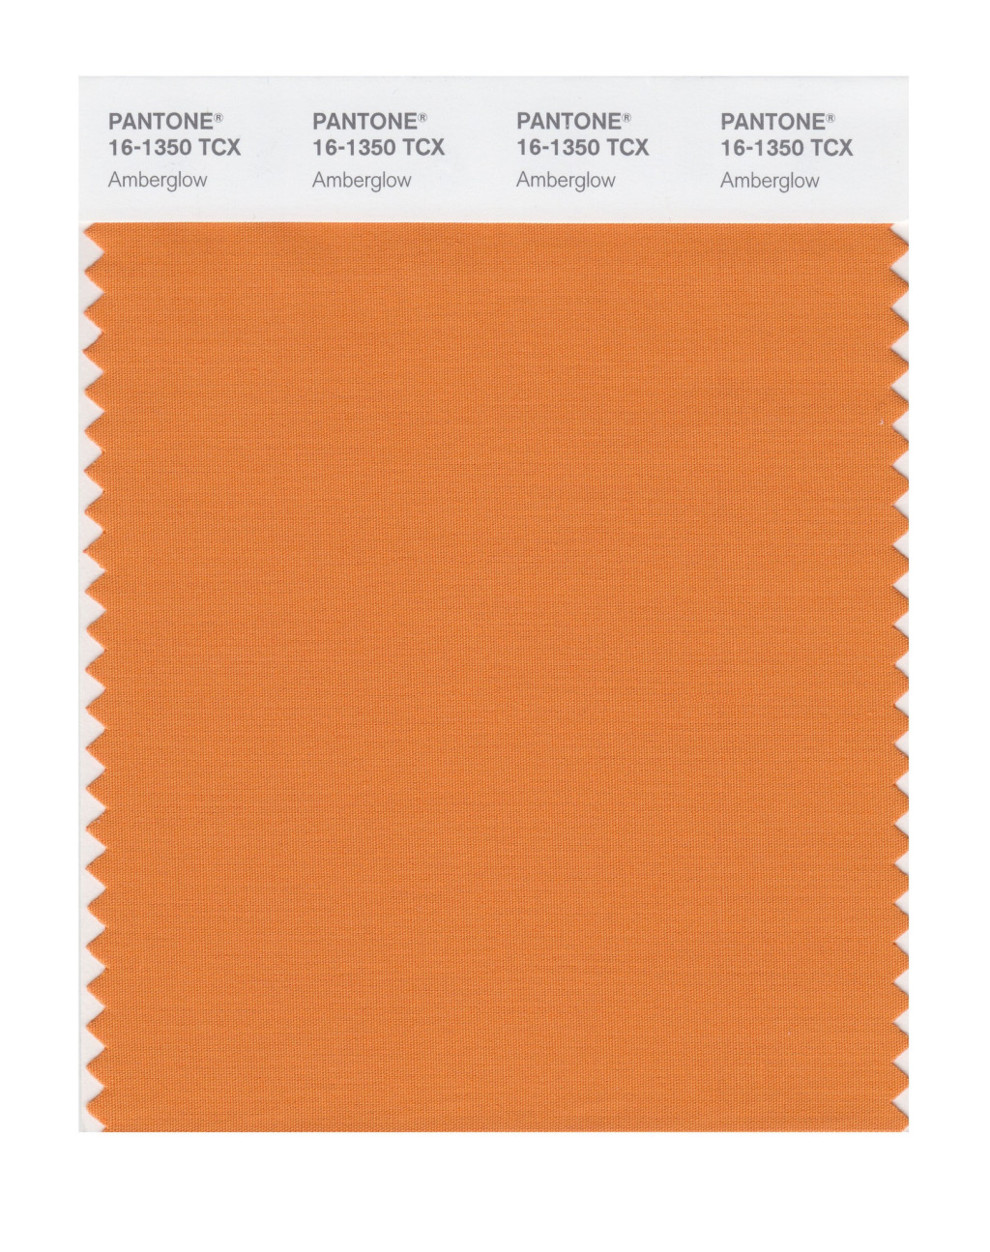 Модные цвета на зиму 2020/2021: персиковая нуга и оранжевый янтарь